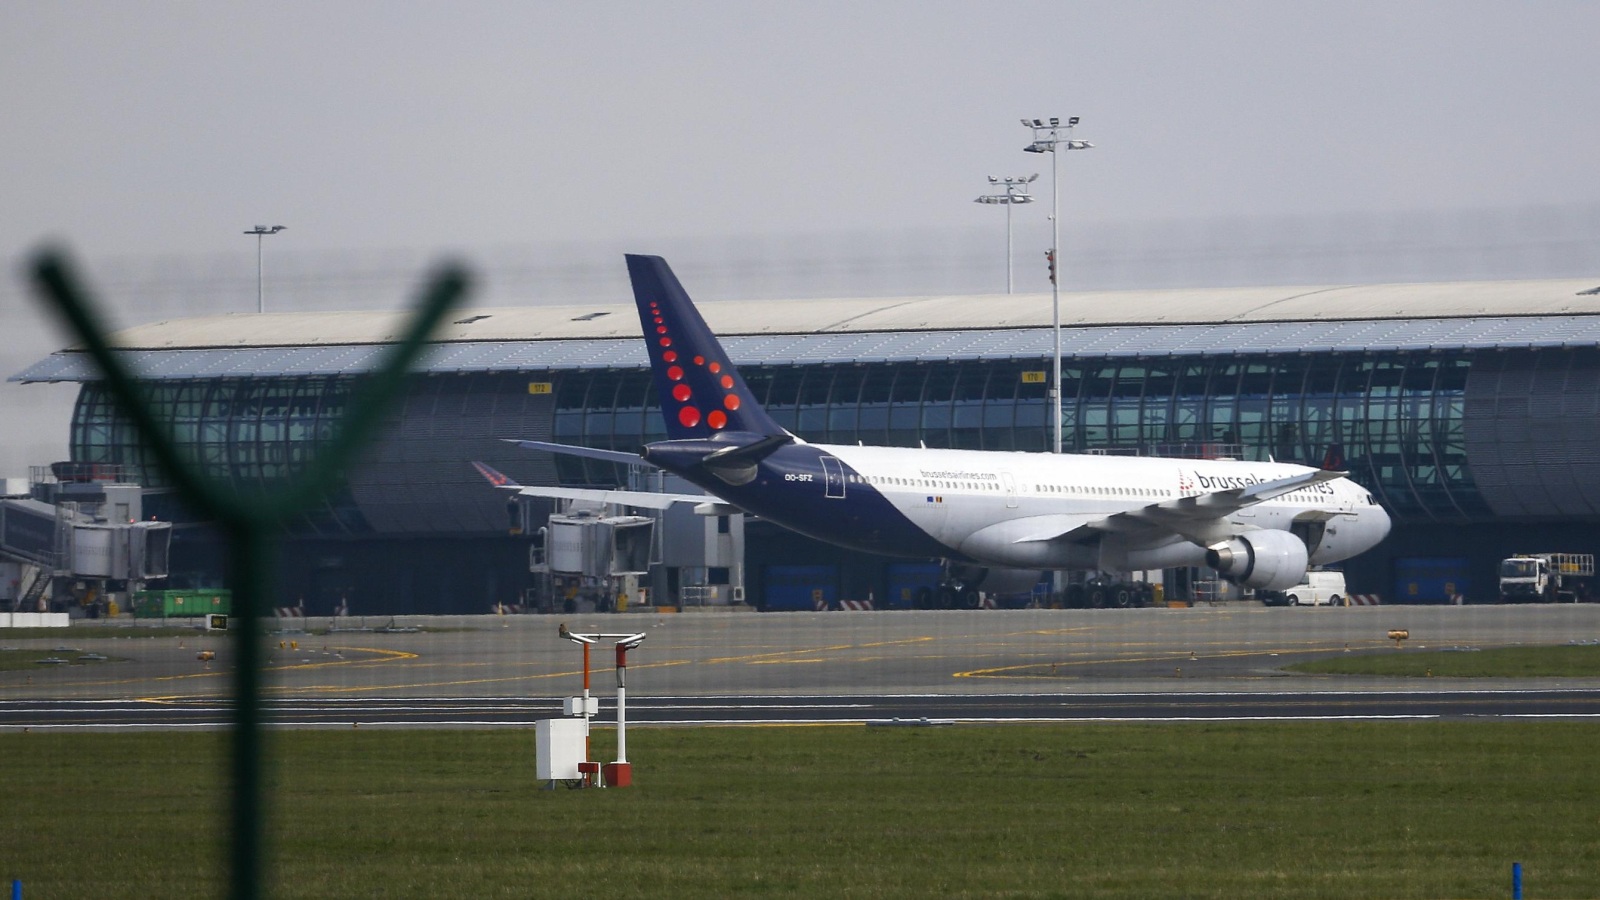 ‪إدارة مطار بروكسل تؤكد عودة العمل وسط تفتيش أكثر دقة‬ إدارة مطار بروكسل تؤكد عودة العمل وسط تفتيش أكثر دقة (رويترز)